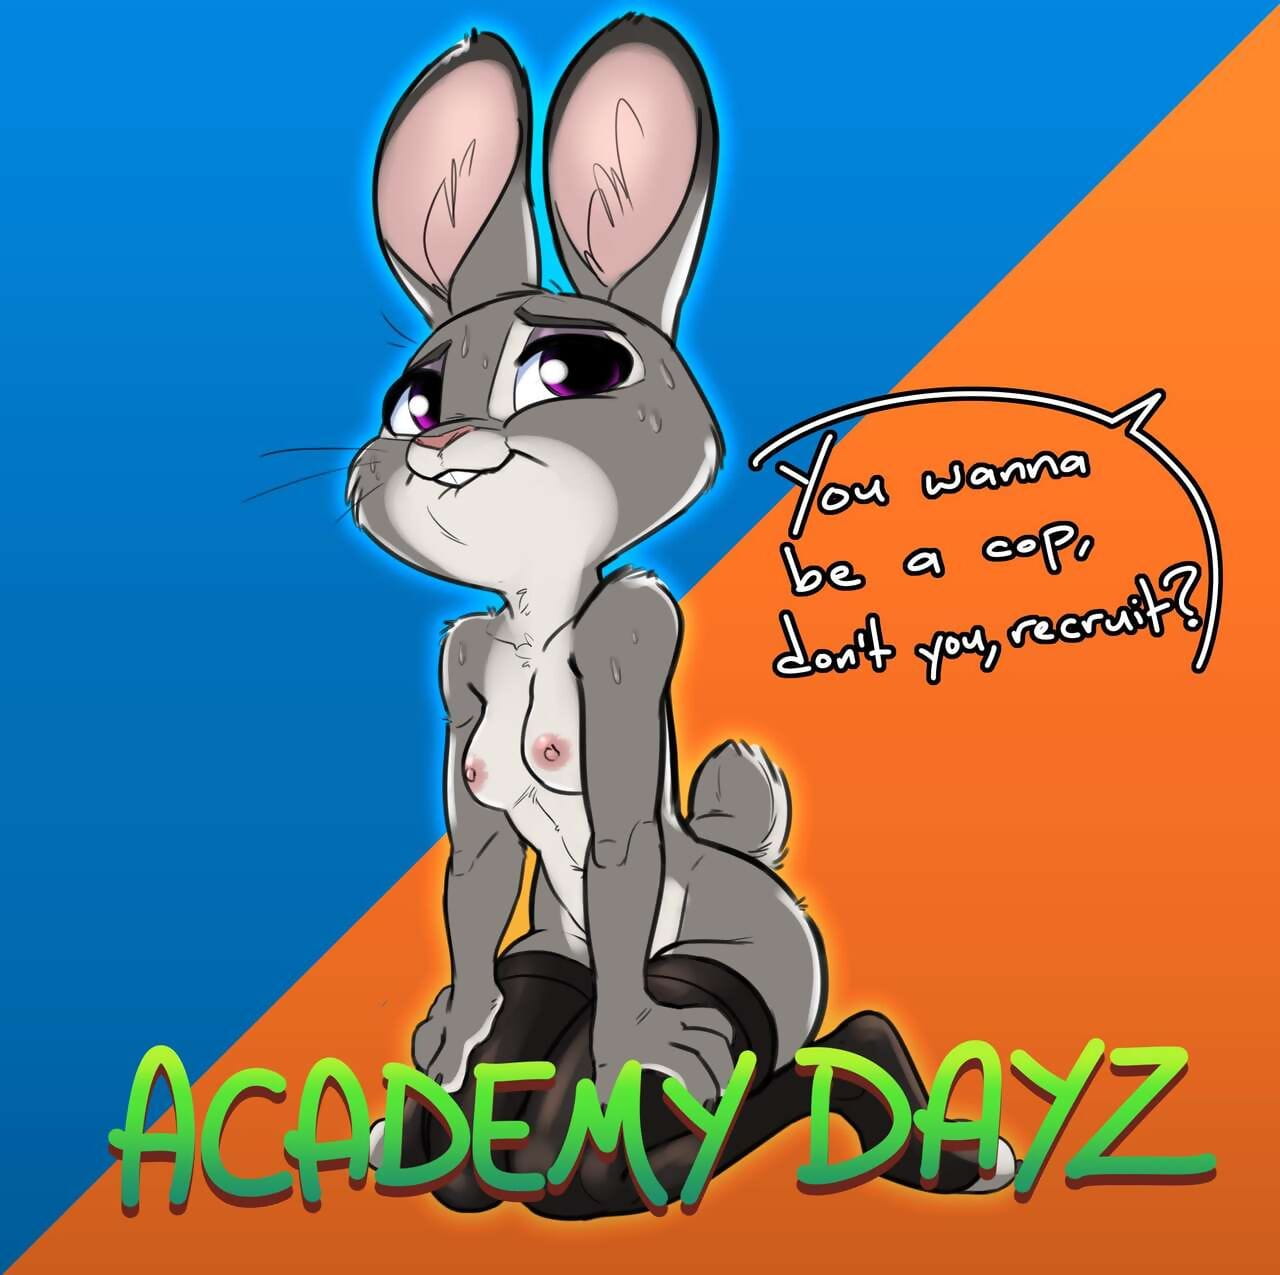 Academy Dayz